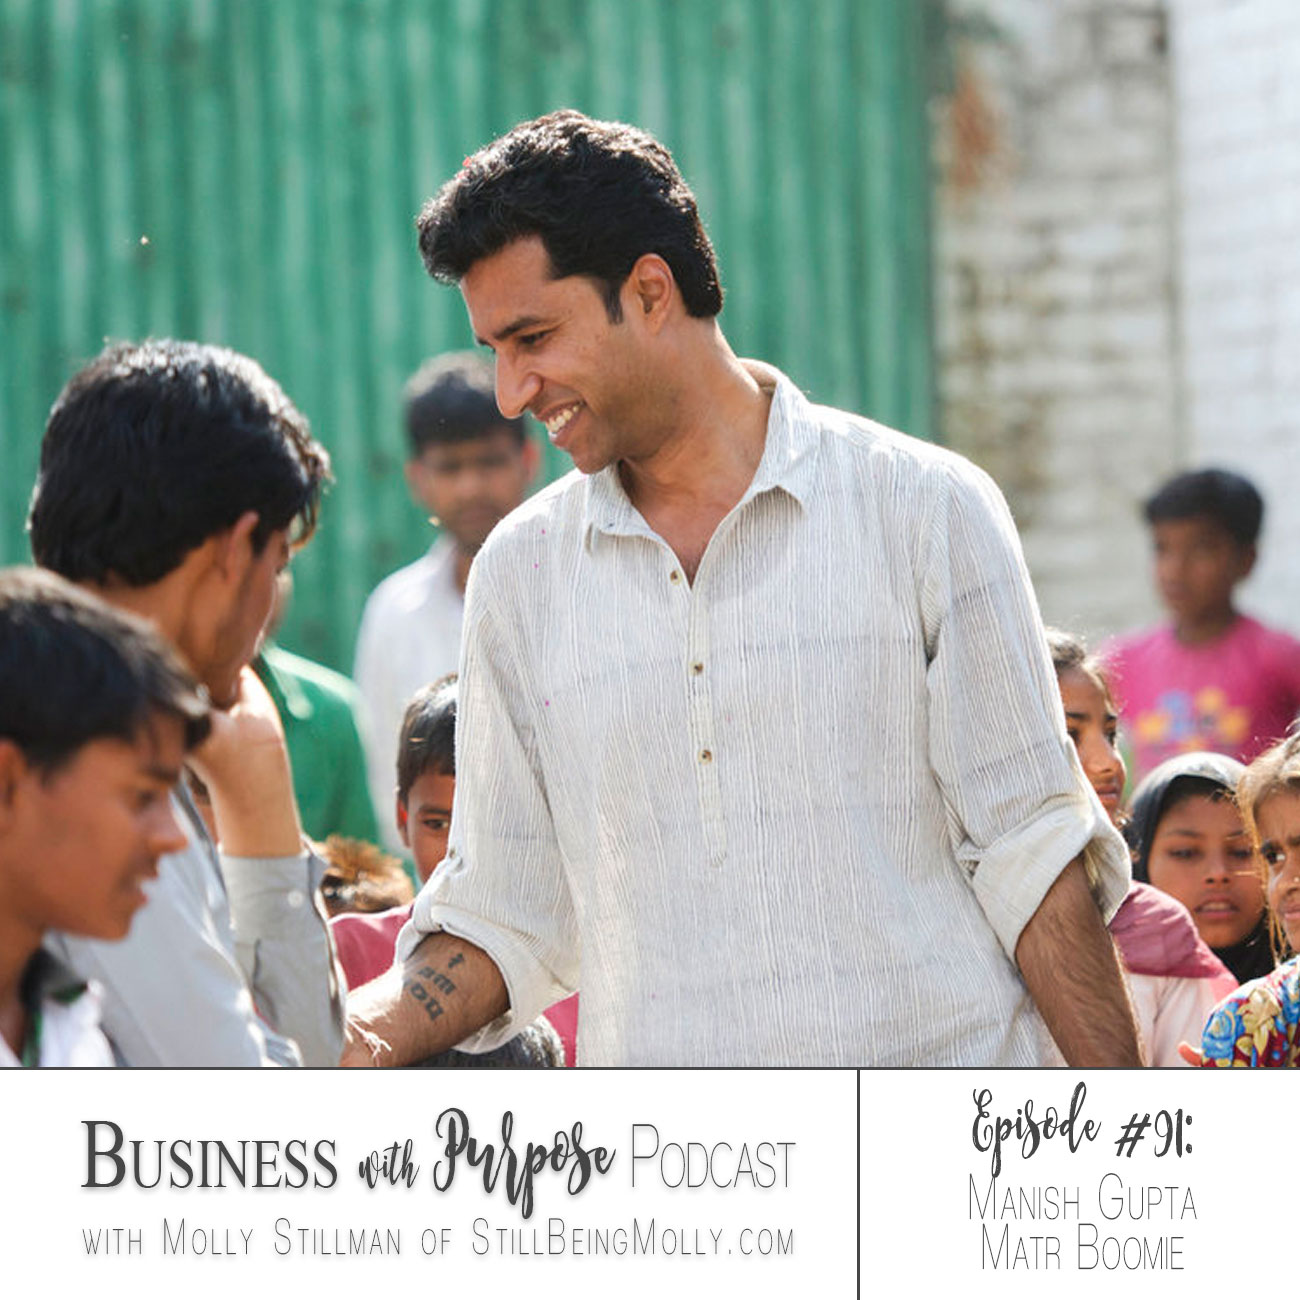 Business with Purpose Podcast EP 91: Manish Gupta, Matr Boomie